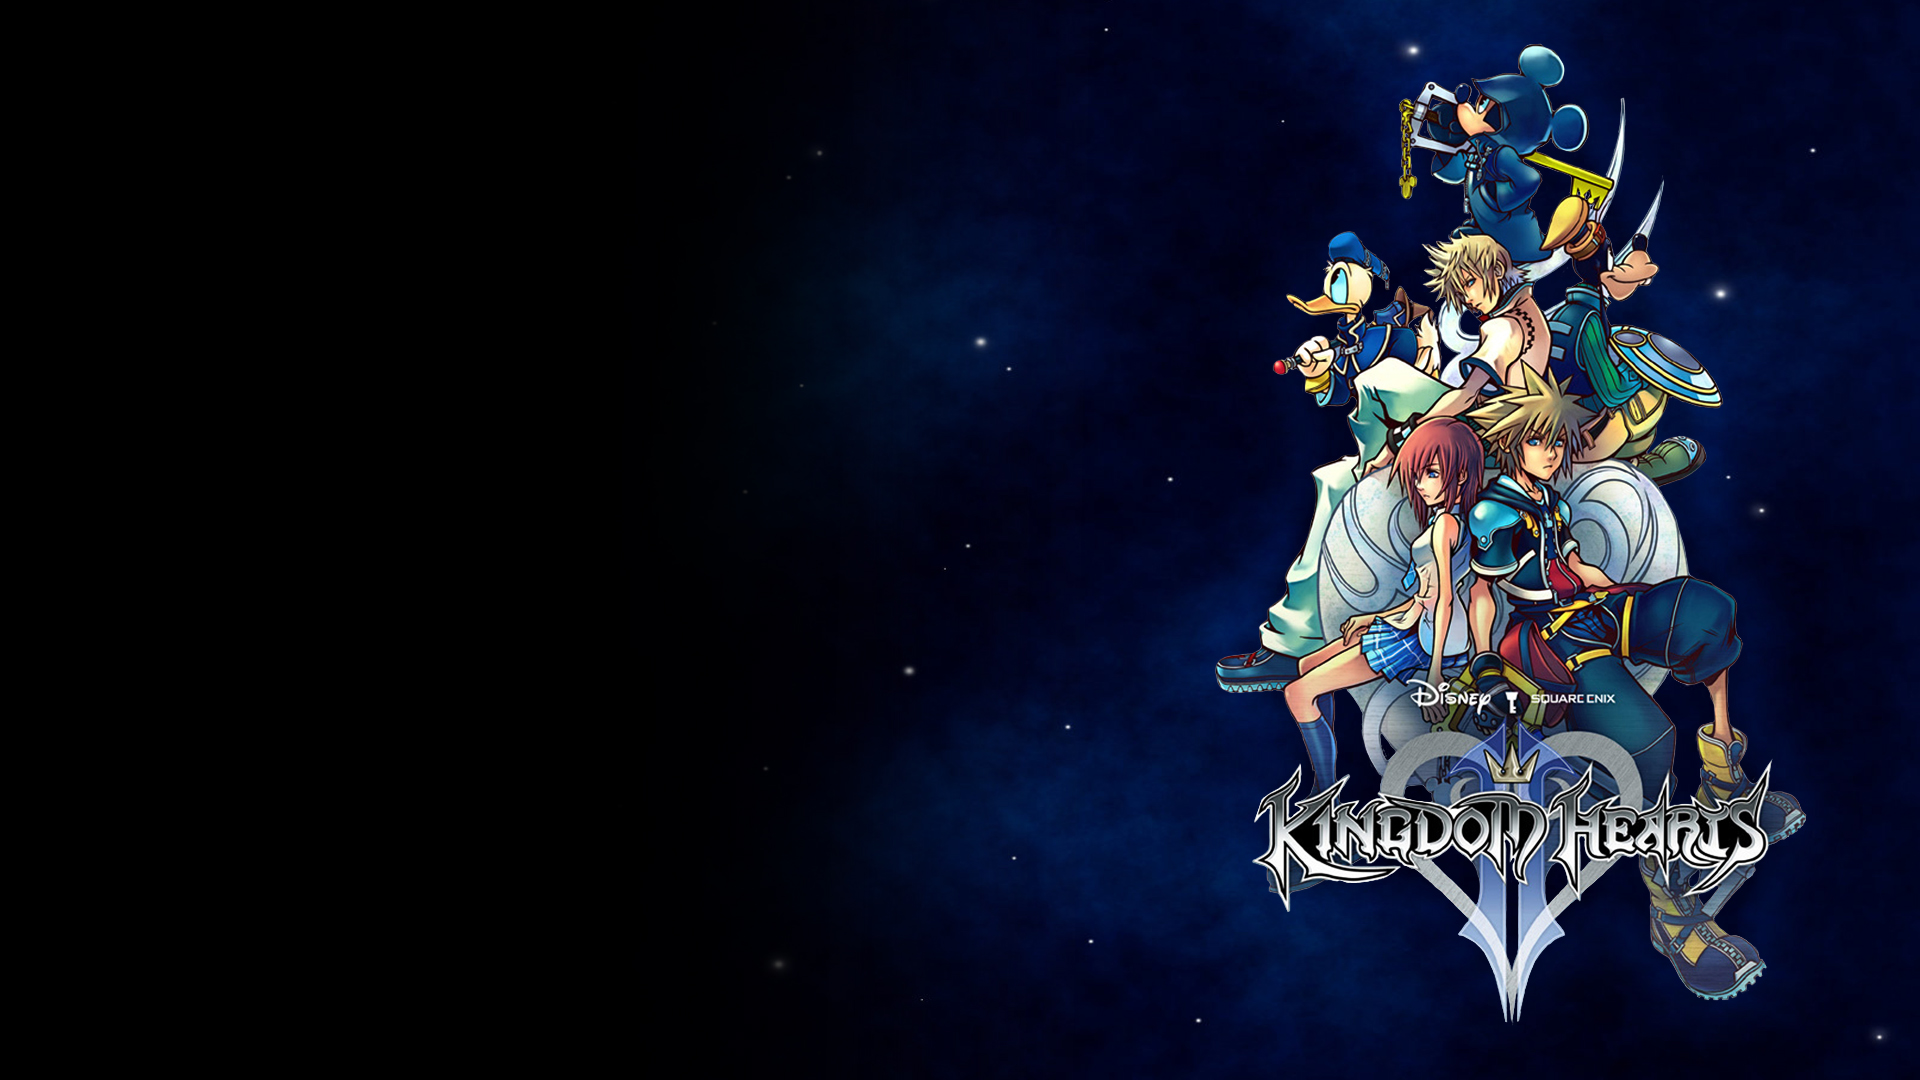 Kingdom Hearts HD wallpaper 1920x1080 52461